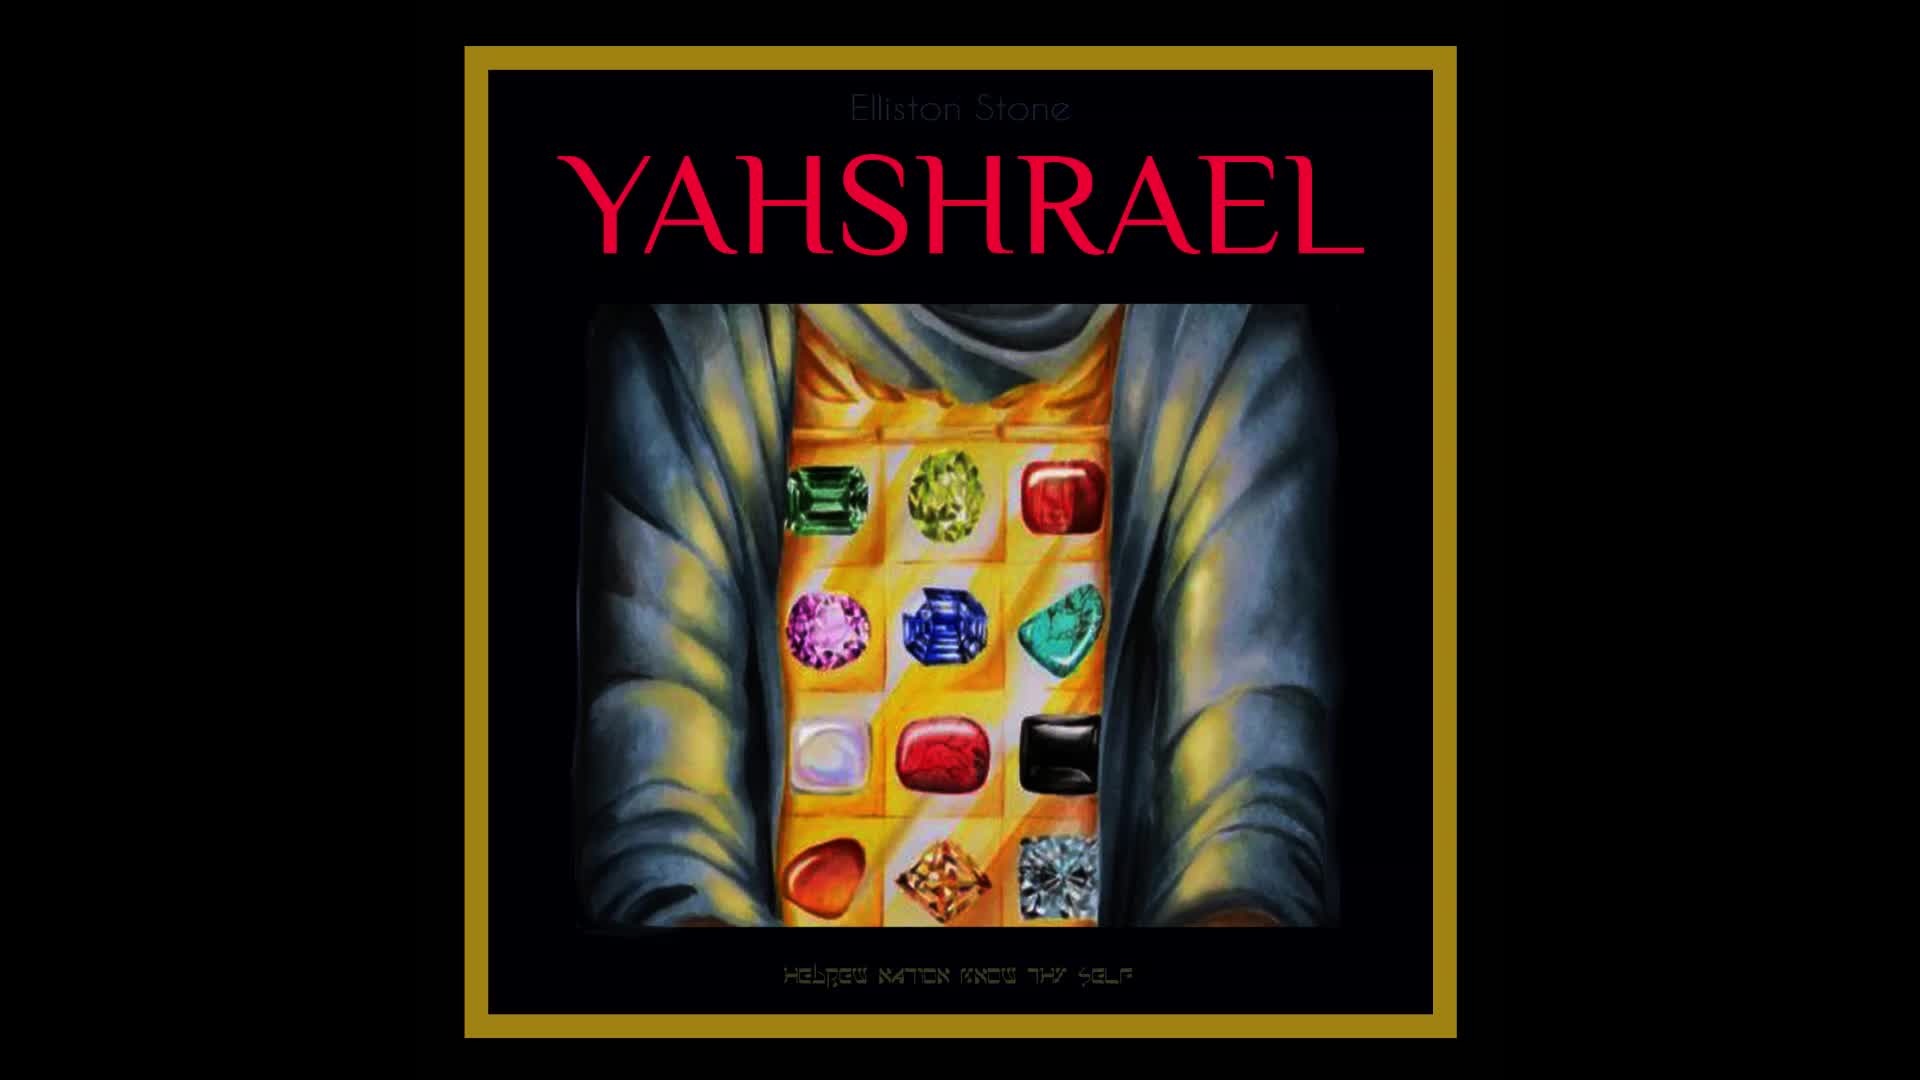 Yahshrael